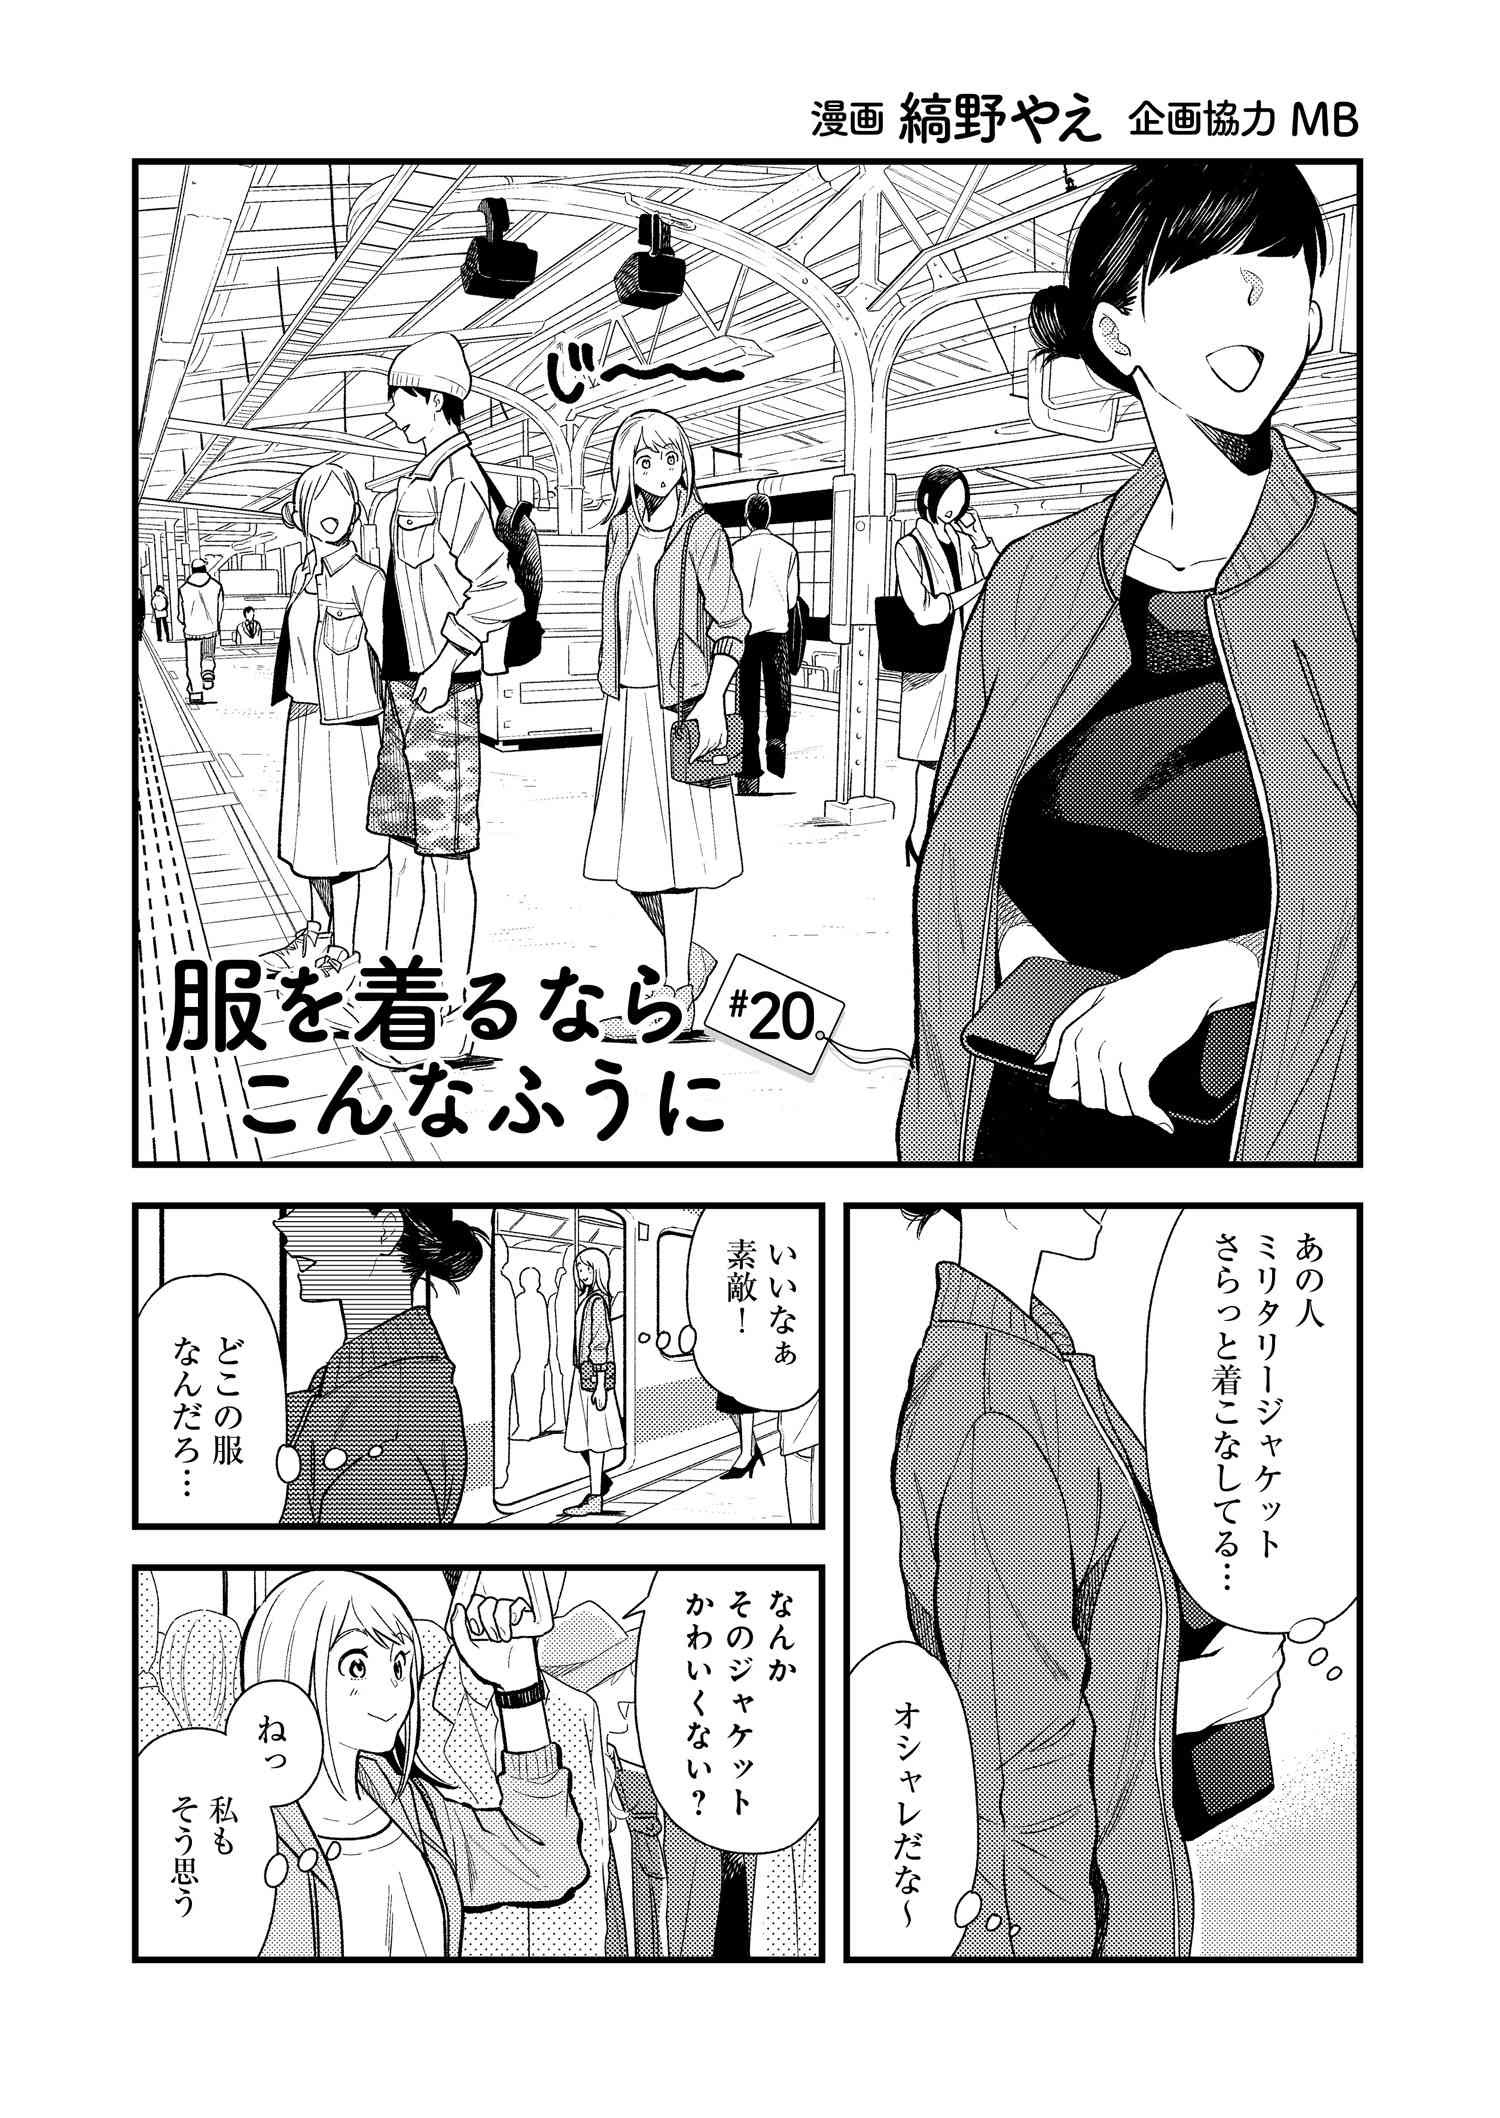 Fuku o Kiru Nara Konna Fuu ni - 服を着るならこんなふうに - Chapter 20 - Page 1